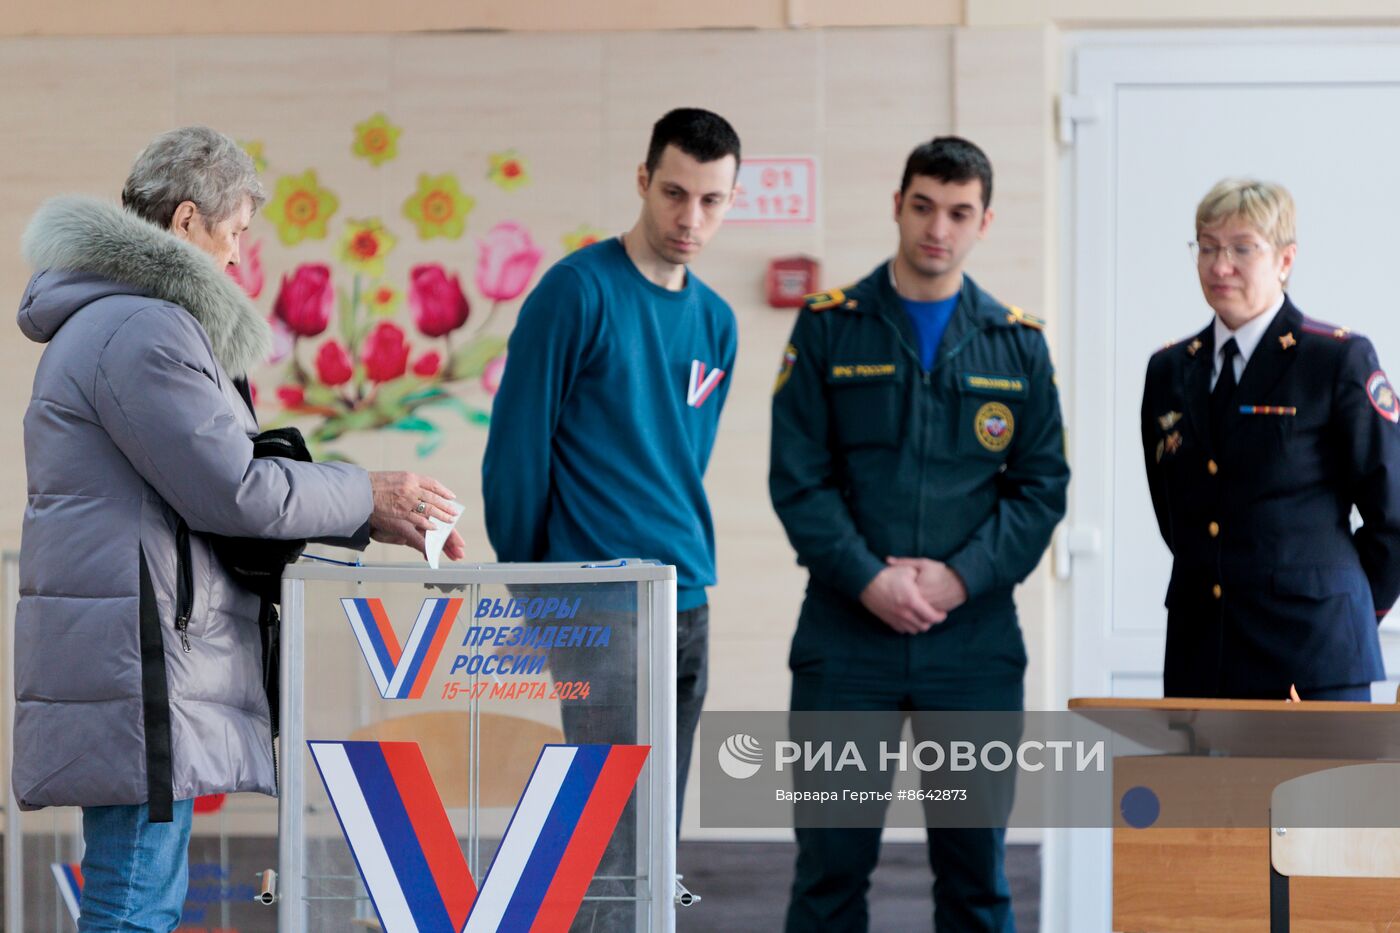 Выборы президента России в регионах